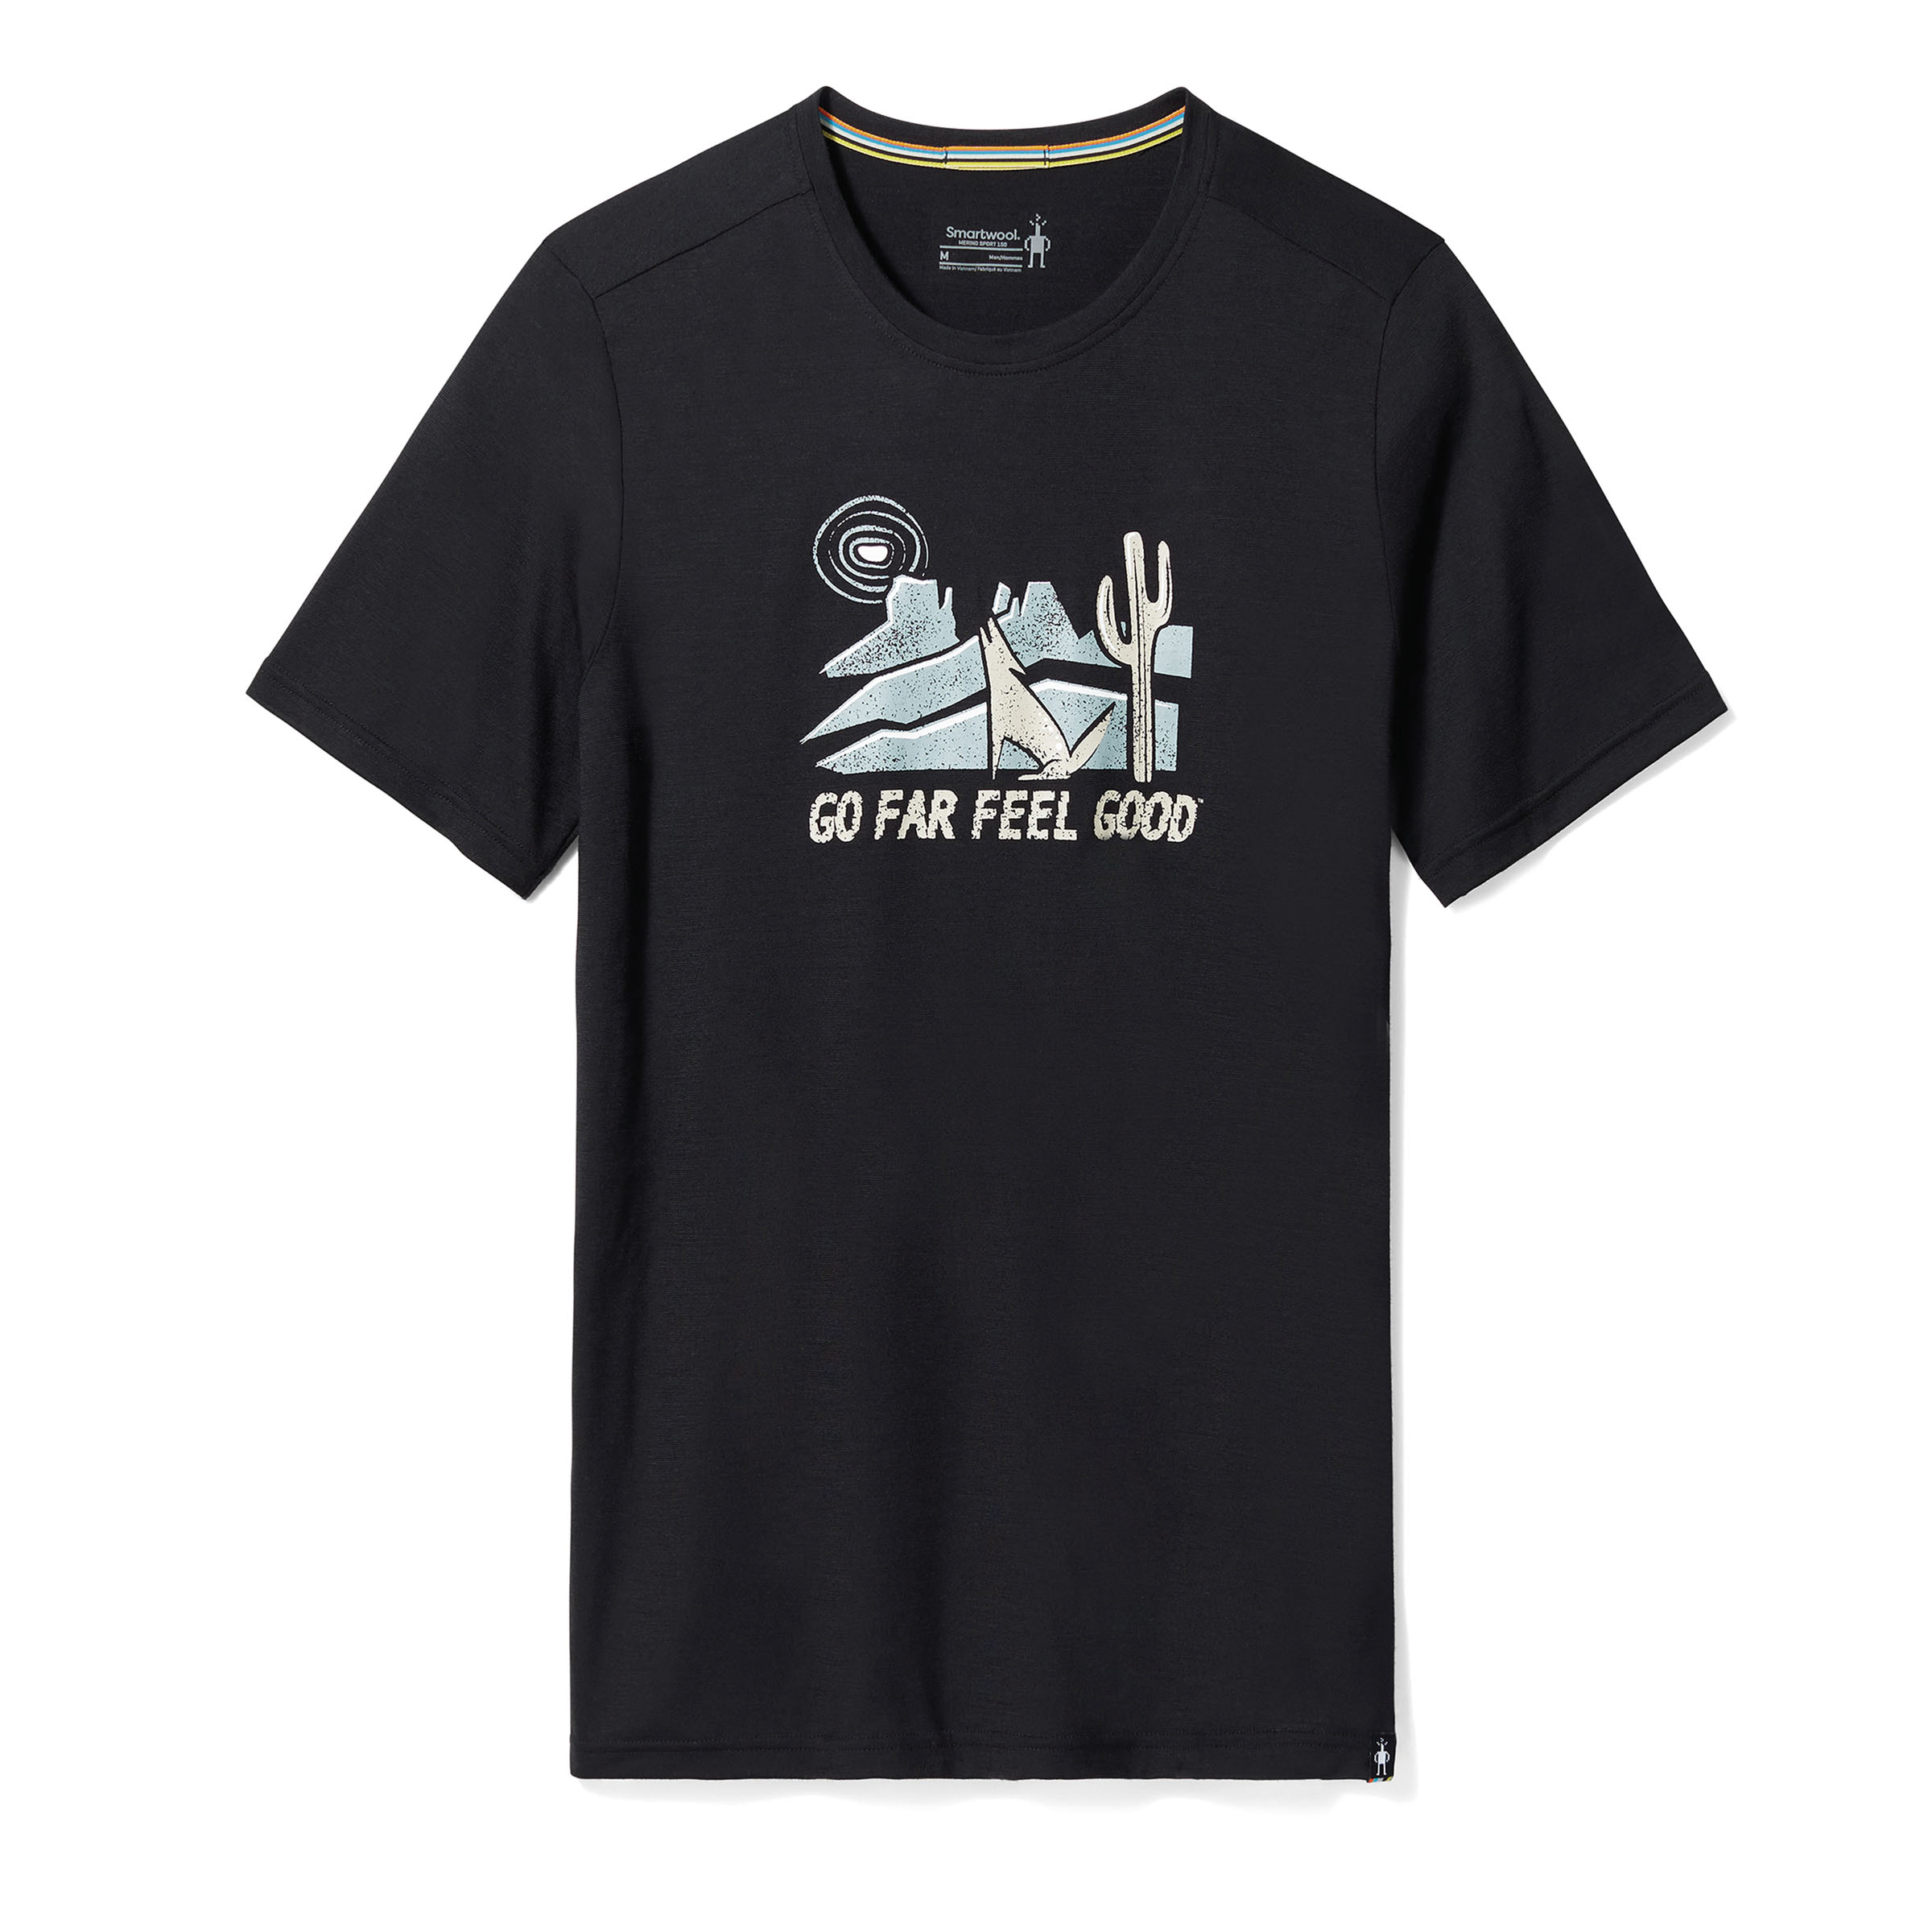 Smartwool Merino Sport 150 Go Far - Merino Shirt Men's, Buy online